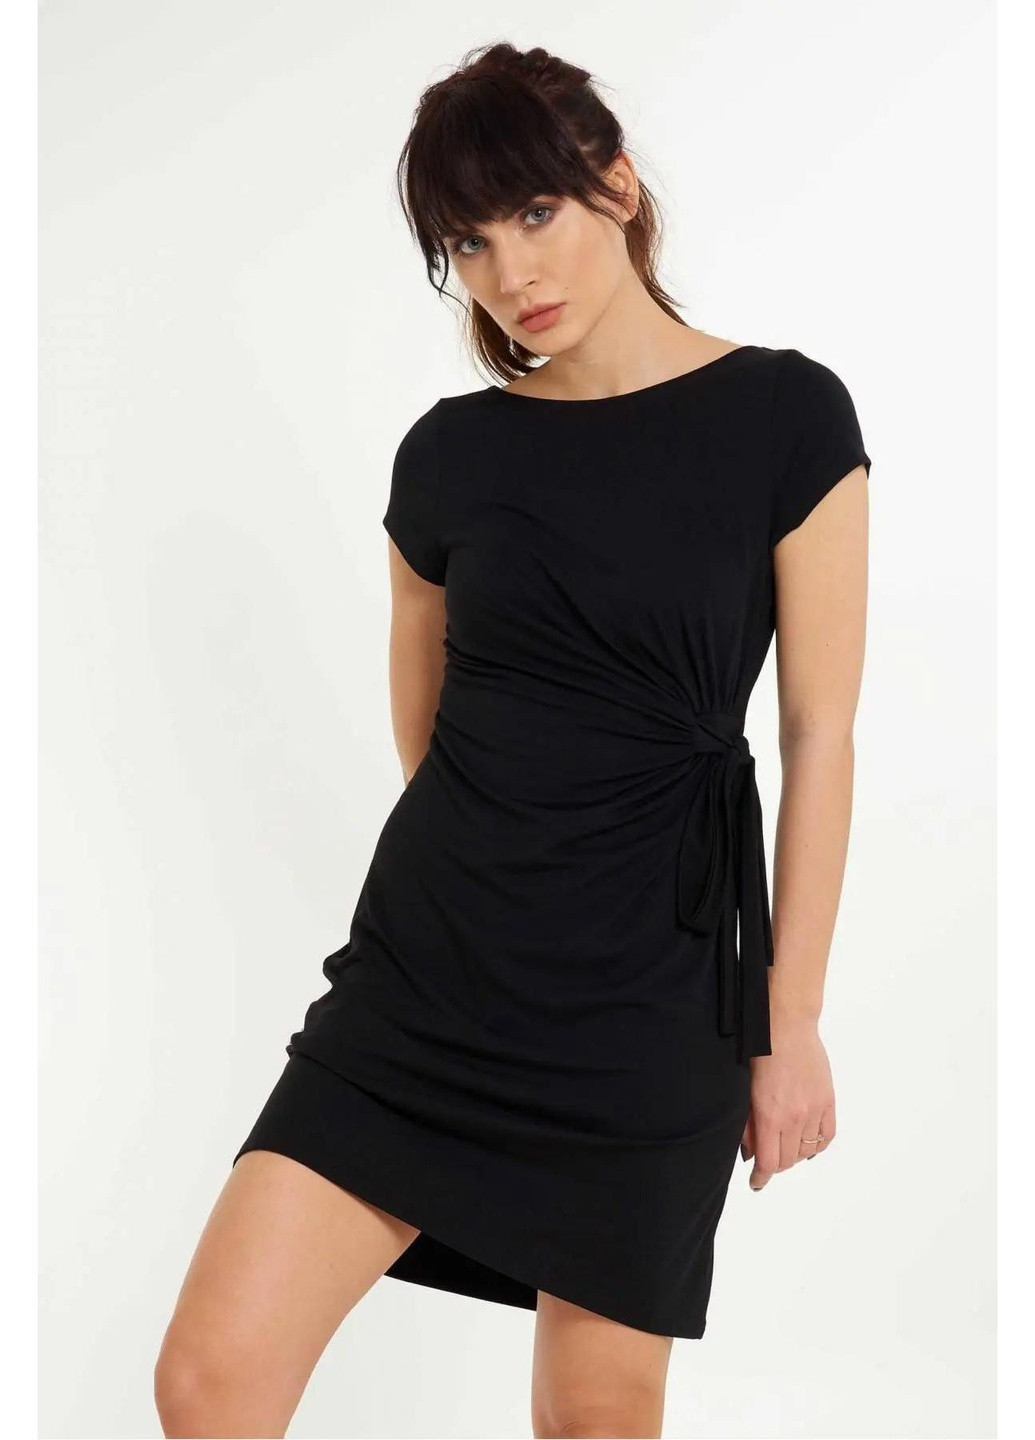 Чорна повсякденний сукня жіноча xl чорний 4304 Lingadore однотонна